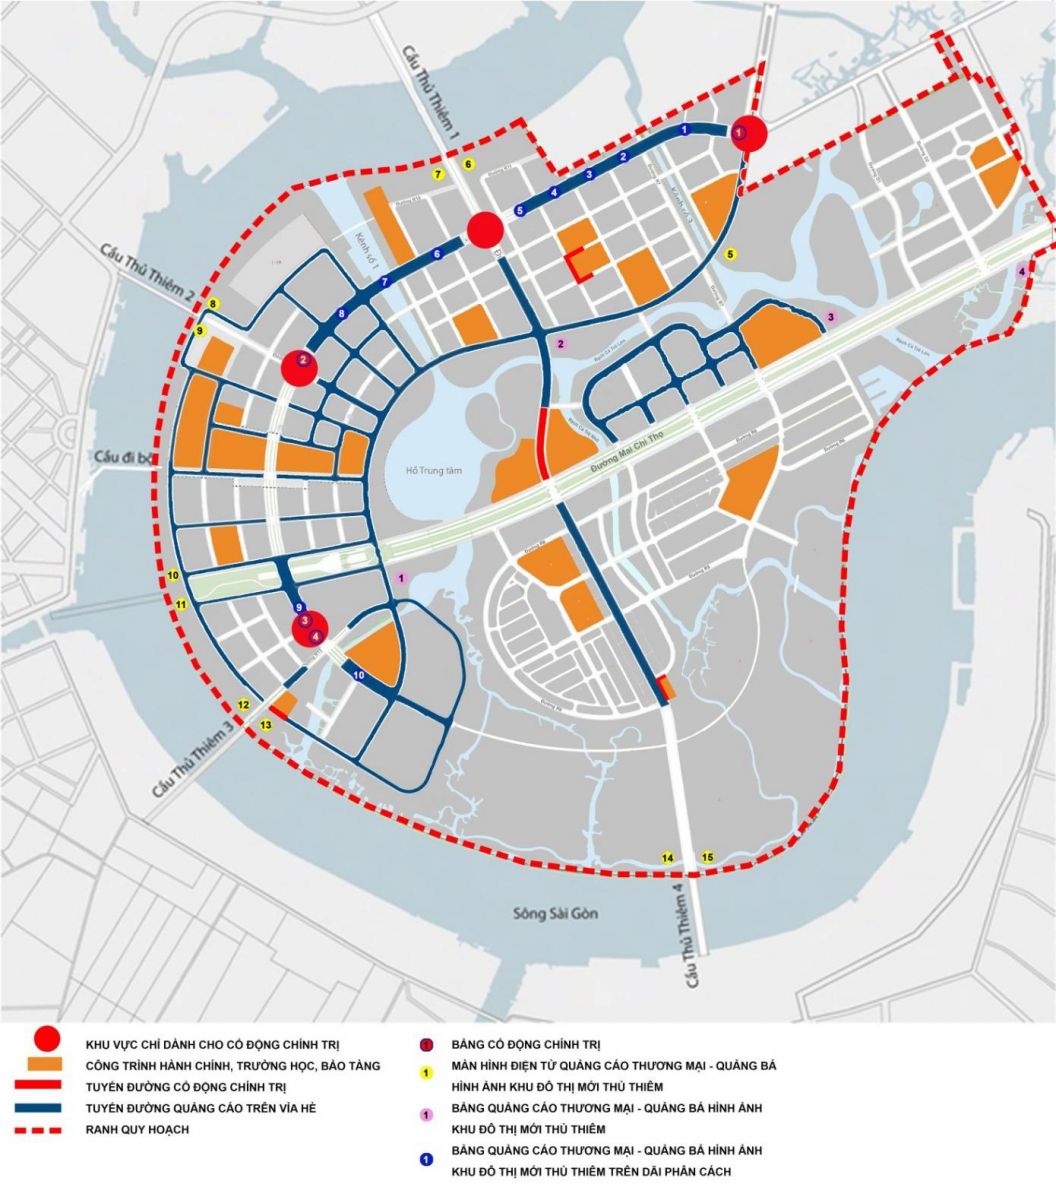 Sơ đồ 2: Các địa điểm lắp đặt phương tiện quảng cáo ngoài trời tại Khu đô thị mới Thủ Thiêm năm 2022.